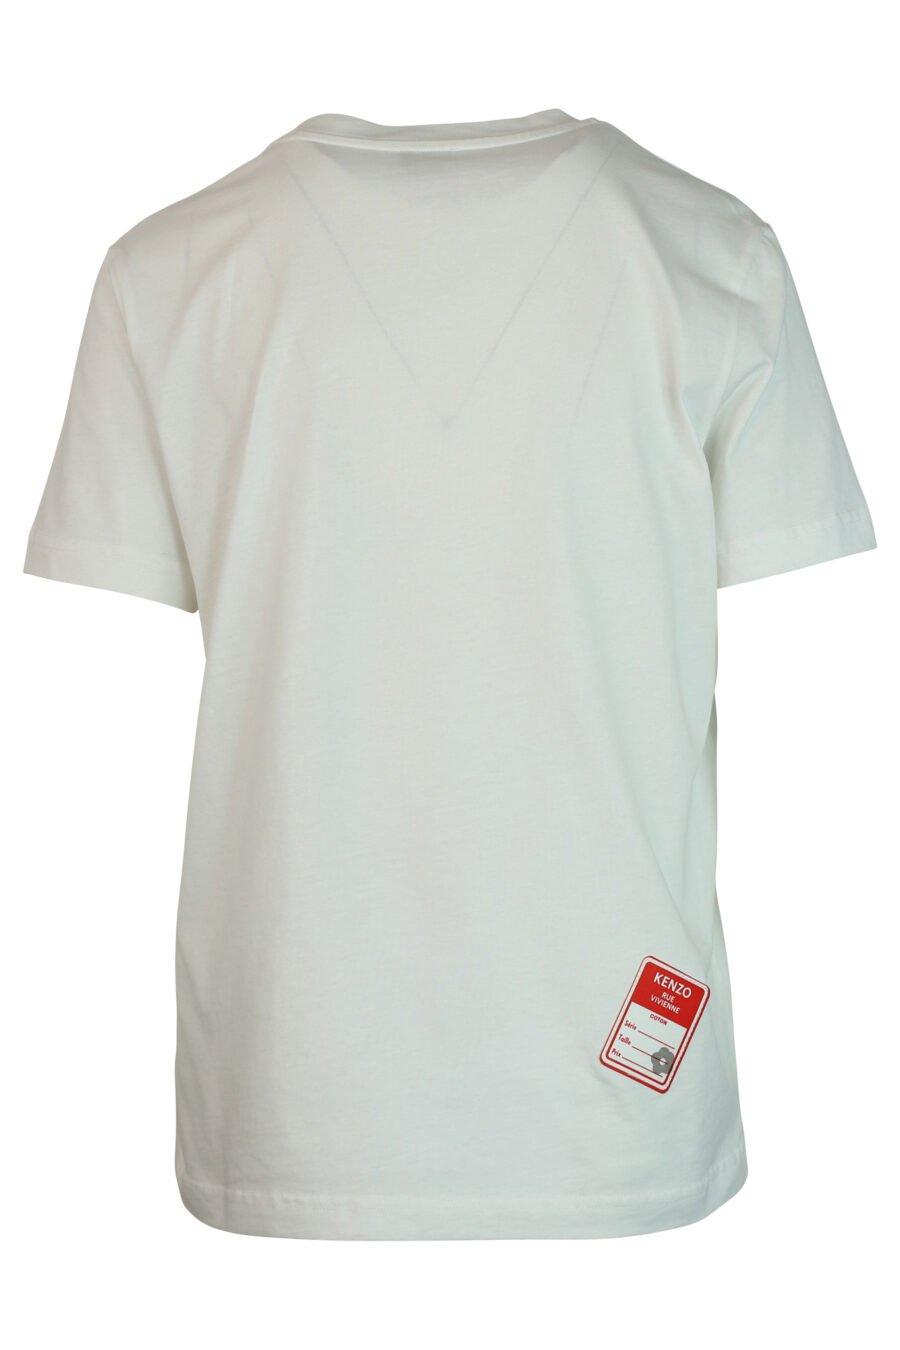 Weißes T-Shirt mit schwarzem "rue vivenne" Maxilogo - 3612230461161 2